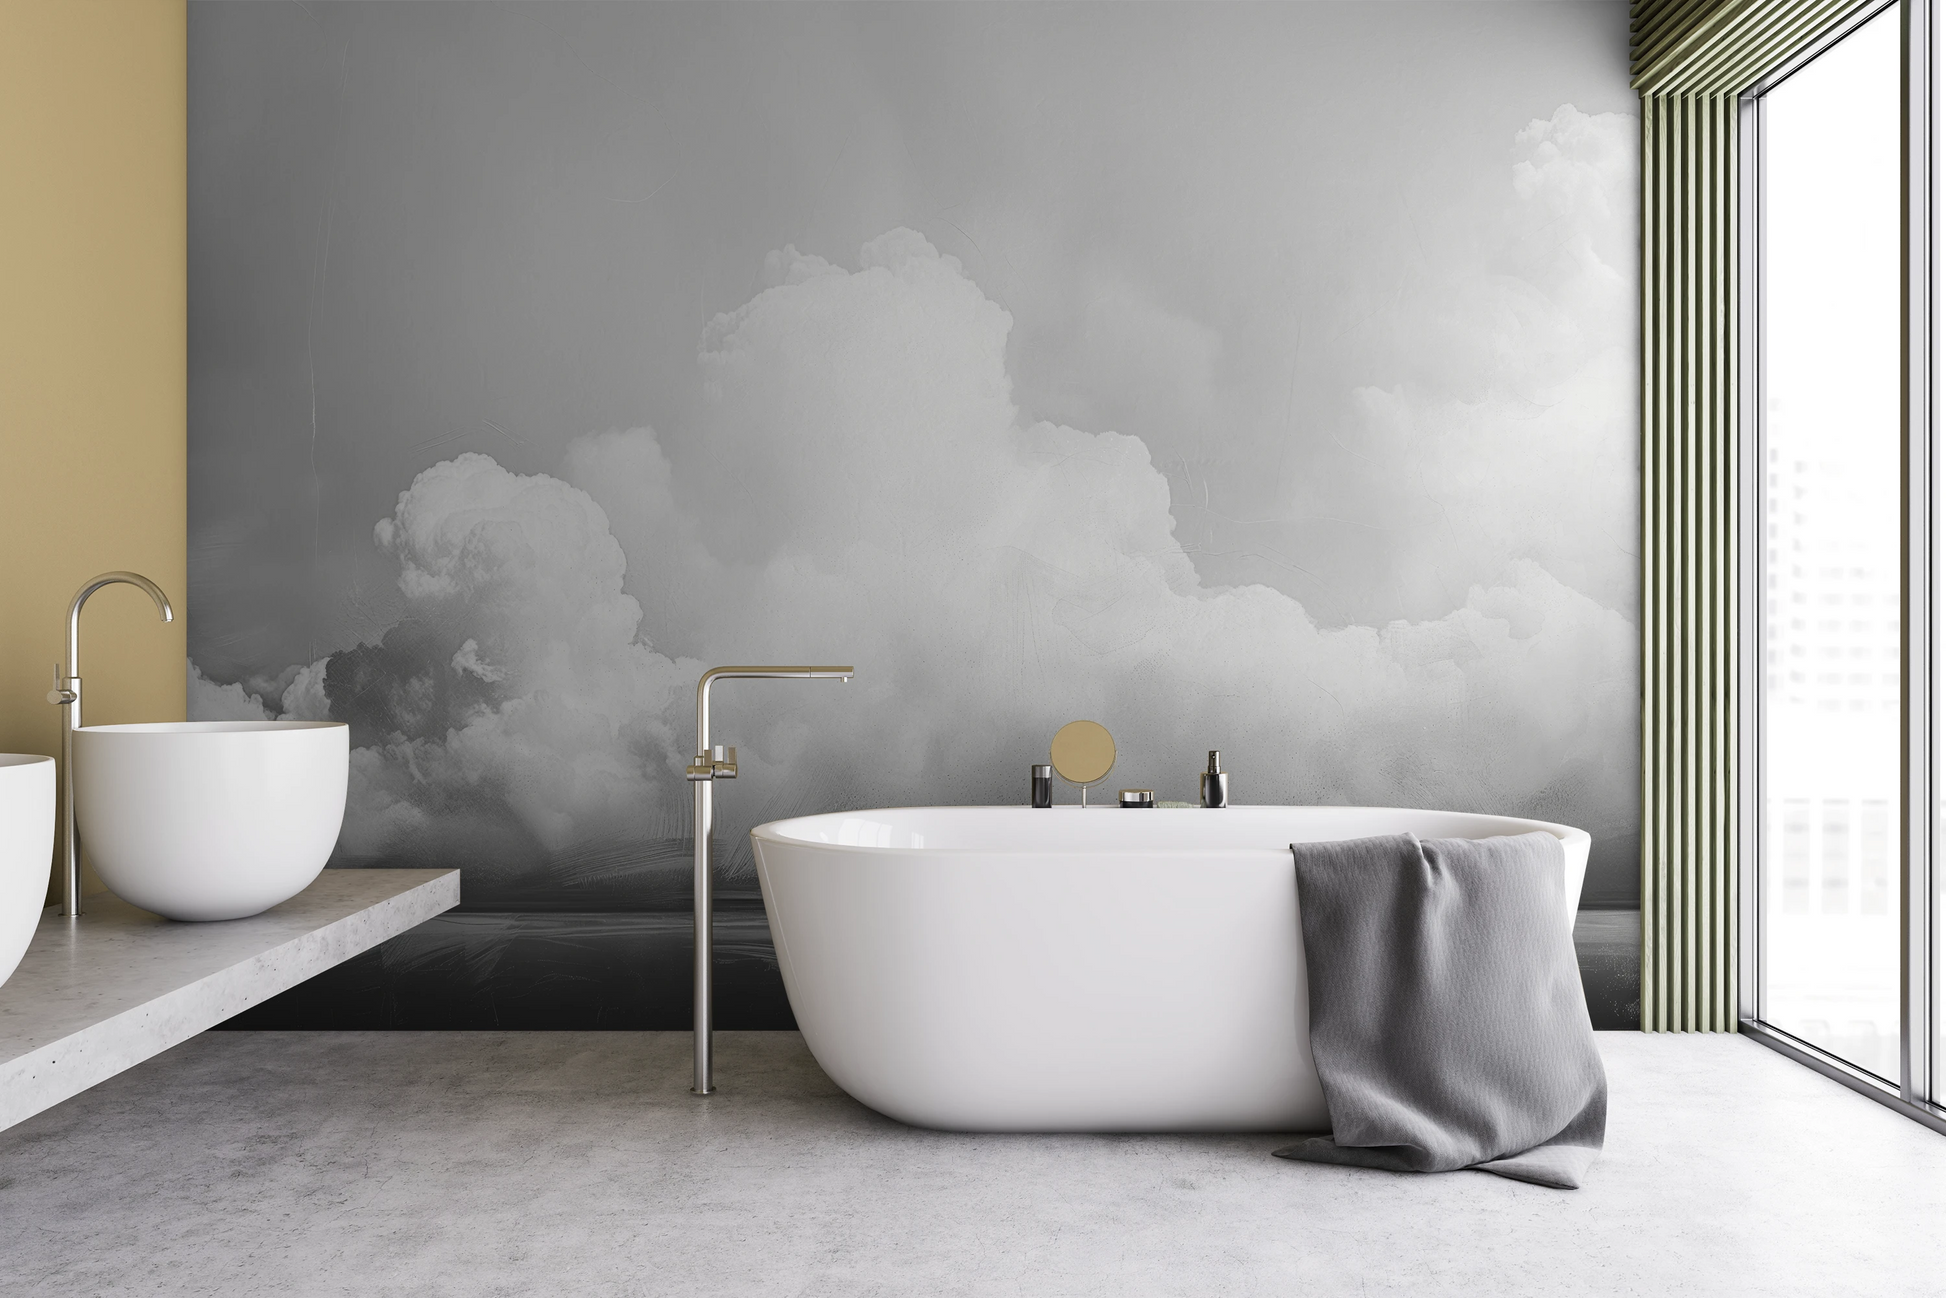 Fototapeta malowana o nazwie Clouds of Tranquility pokazana w aranżacji wnętrza.